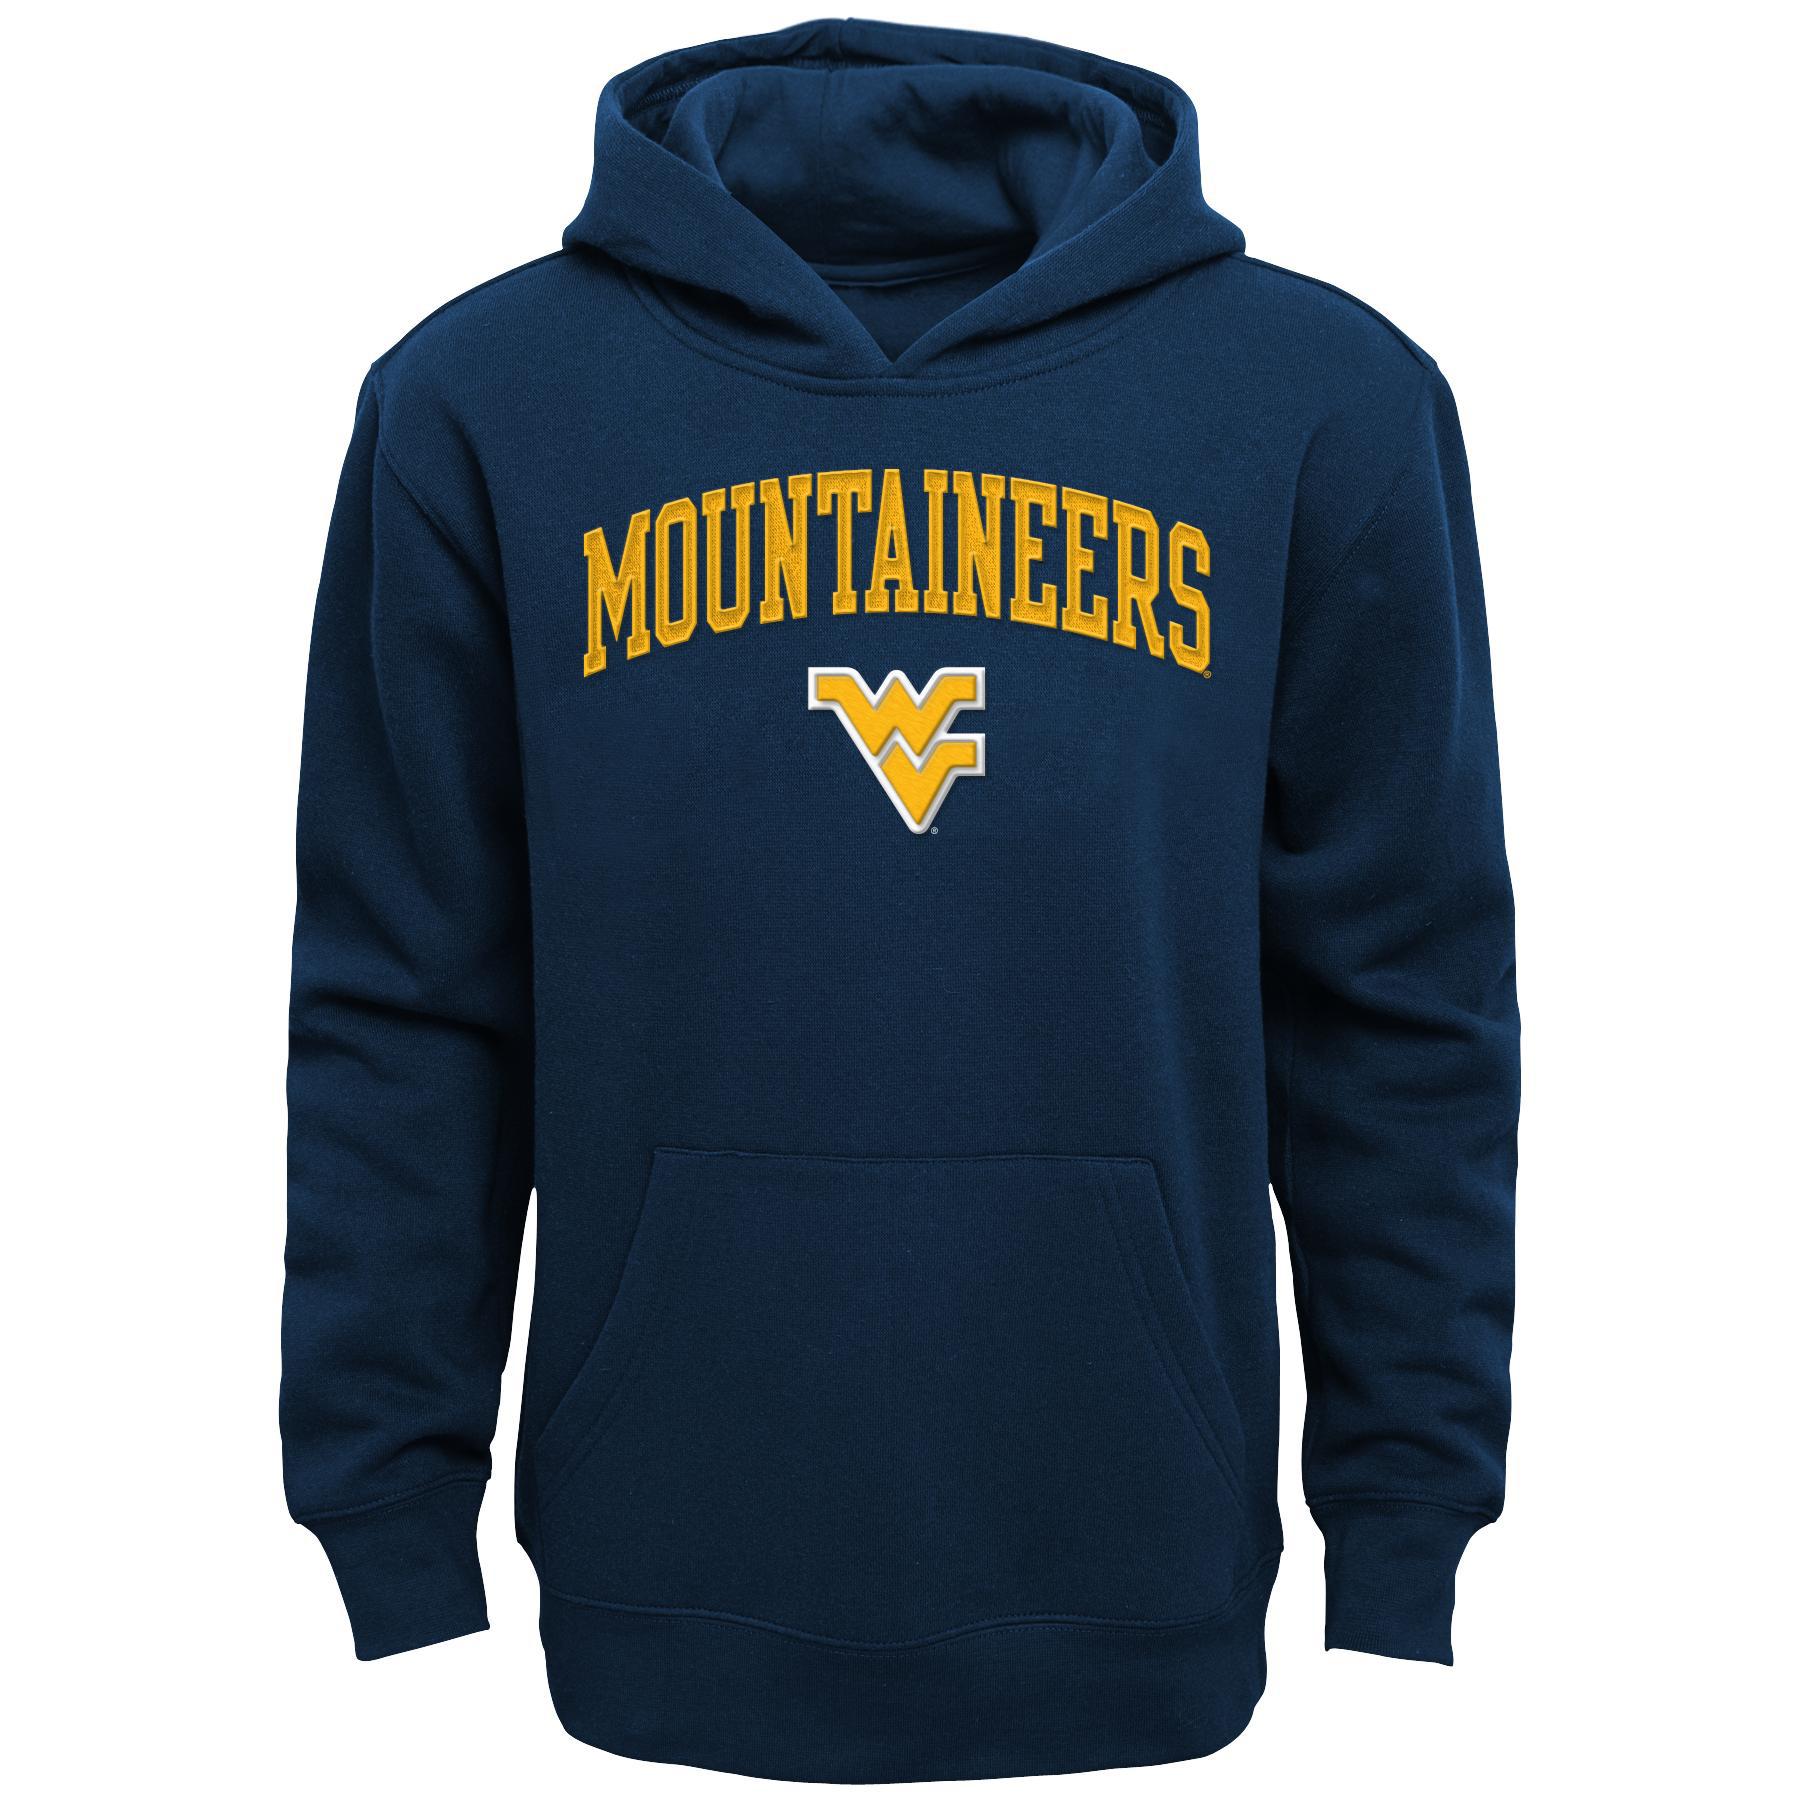 NCAA Boys' Hoodie - West Virginia University Mountaineers